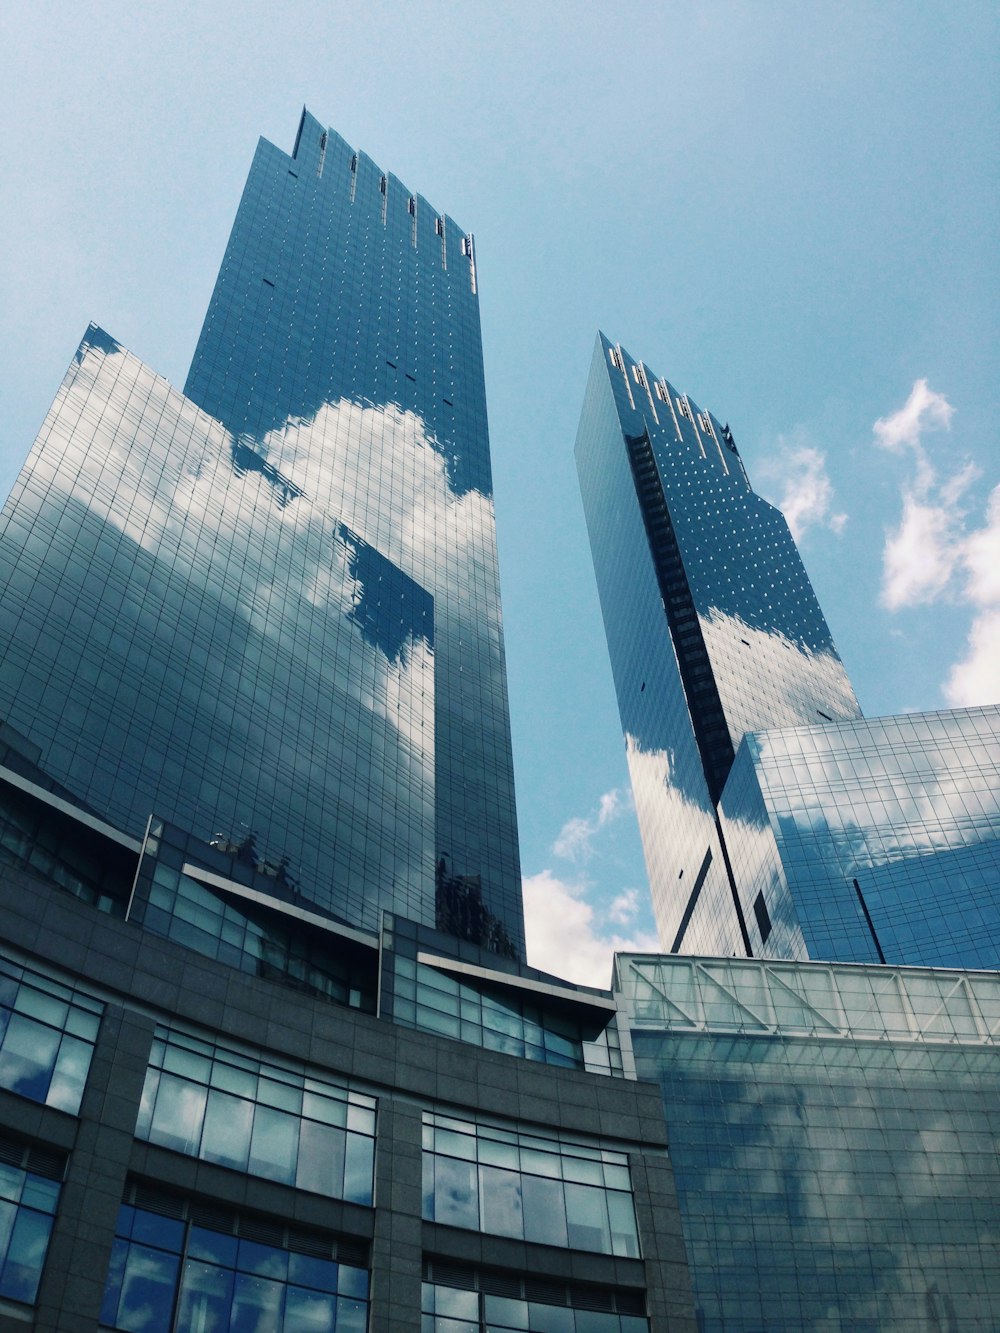 Edificio de vidrio azul y blanco bajo el cielo azul durante el día